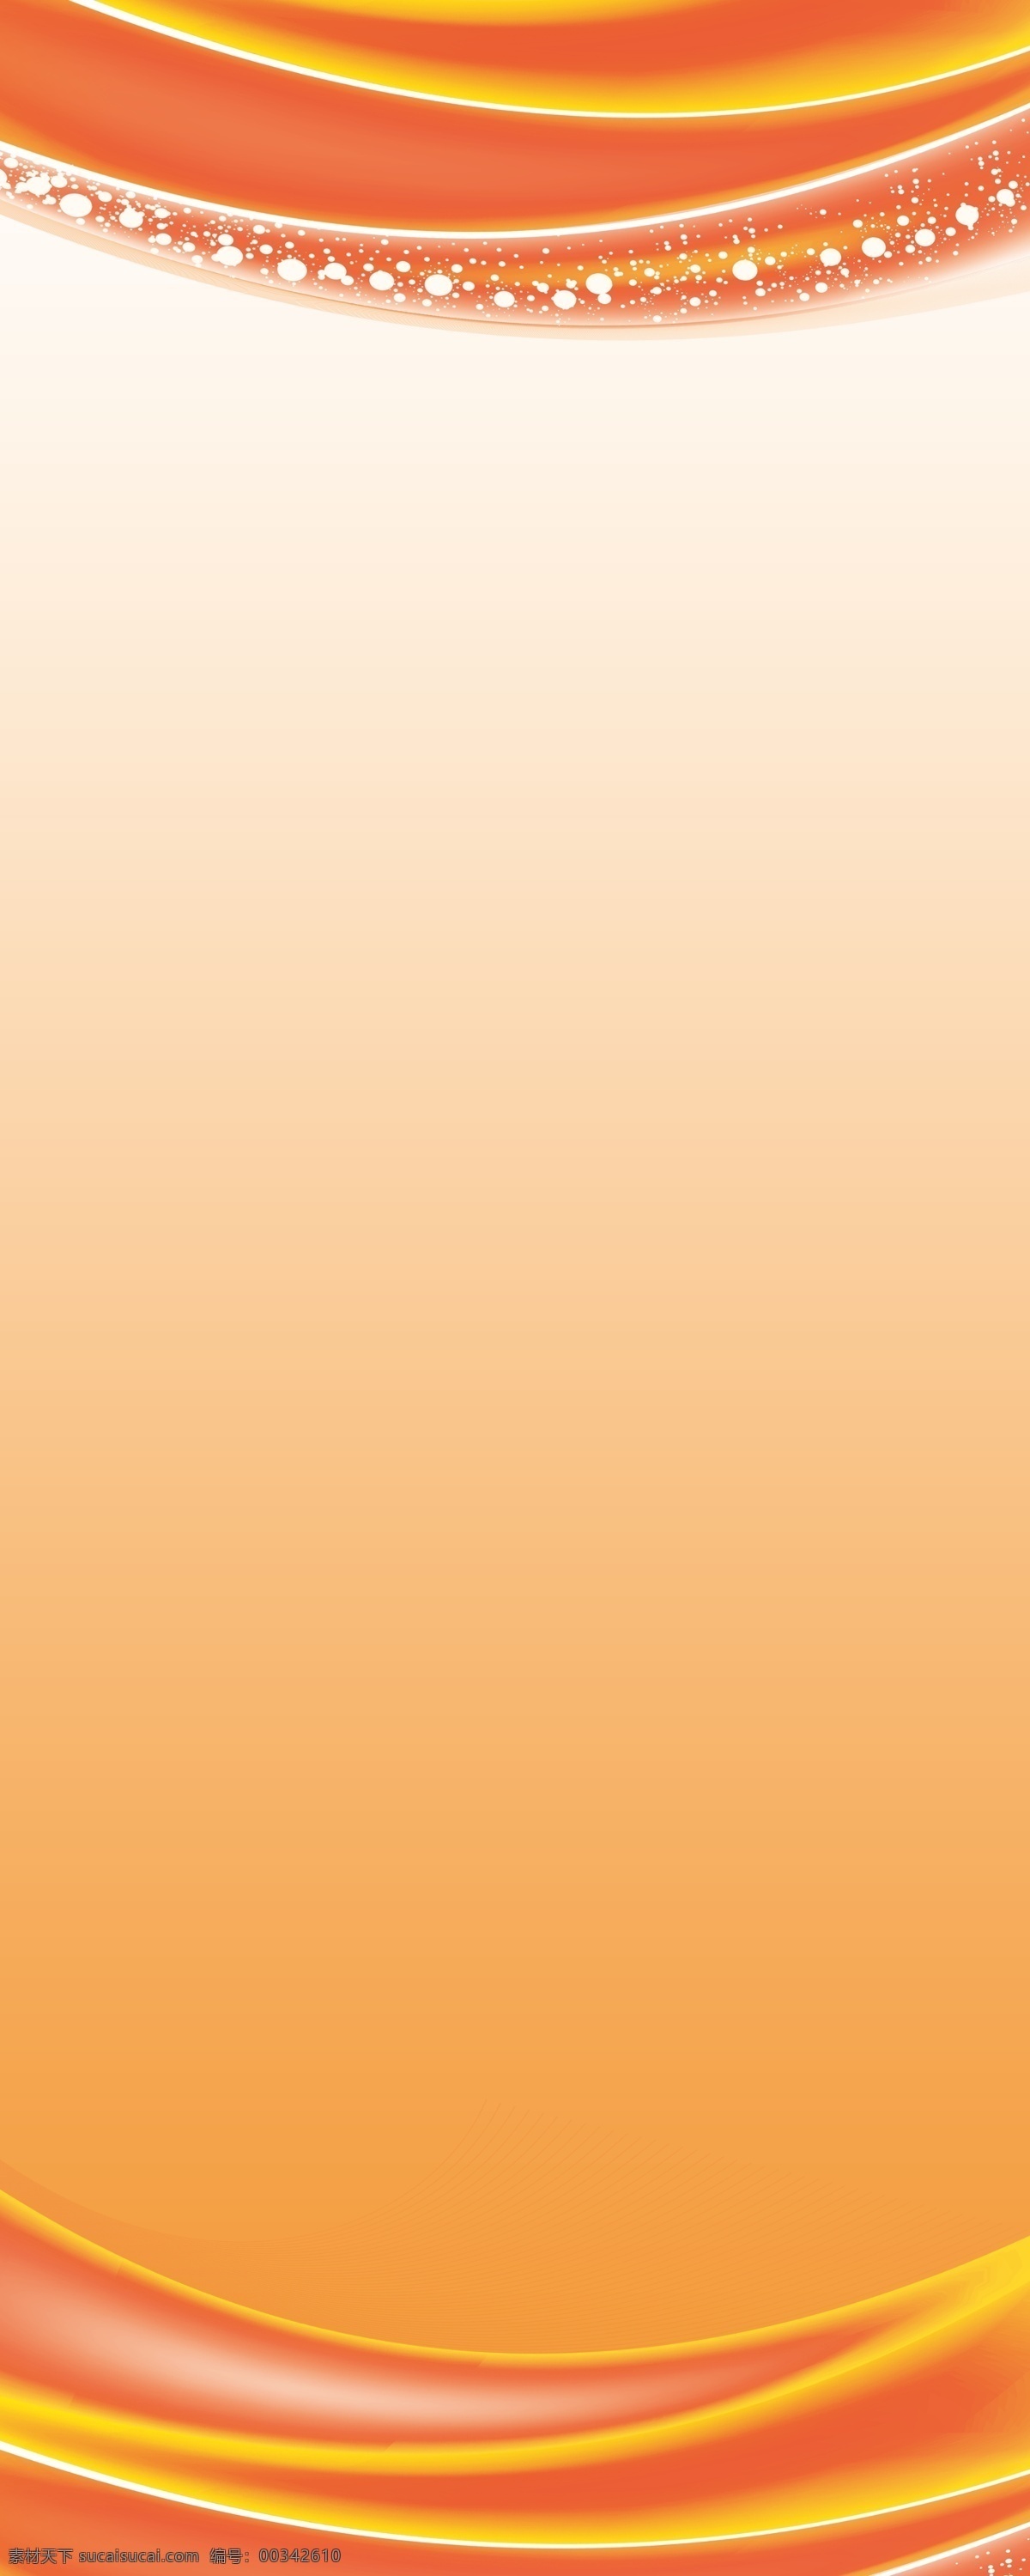 易拉宝模版 易拉宝 易拉宝设计 时尚易拉宝 动感易拉宝 花纹易拉宝 超市易拉宝 商场易拉宝 易拉宝背景 易拉宝模板 红色易拉宝 企业易拉宝 公司易拉宝 公益易拉宝 制度易拉宝 科技易拉宝 金融易拉宝 银行易拉宝 易拉宝展架 绚易拉宝 会场易拉宝 简洁易拉宝 活动易拉宝 易拉宝素材 彩色易拉宝 x展架 展板模板 黑色